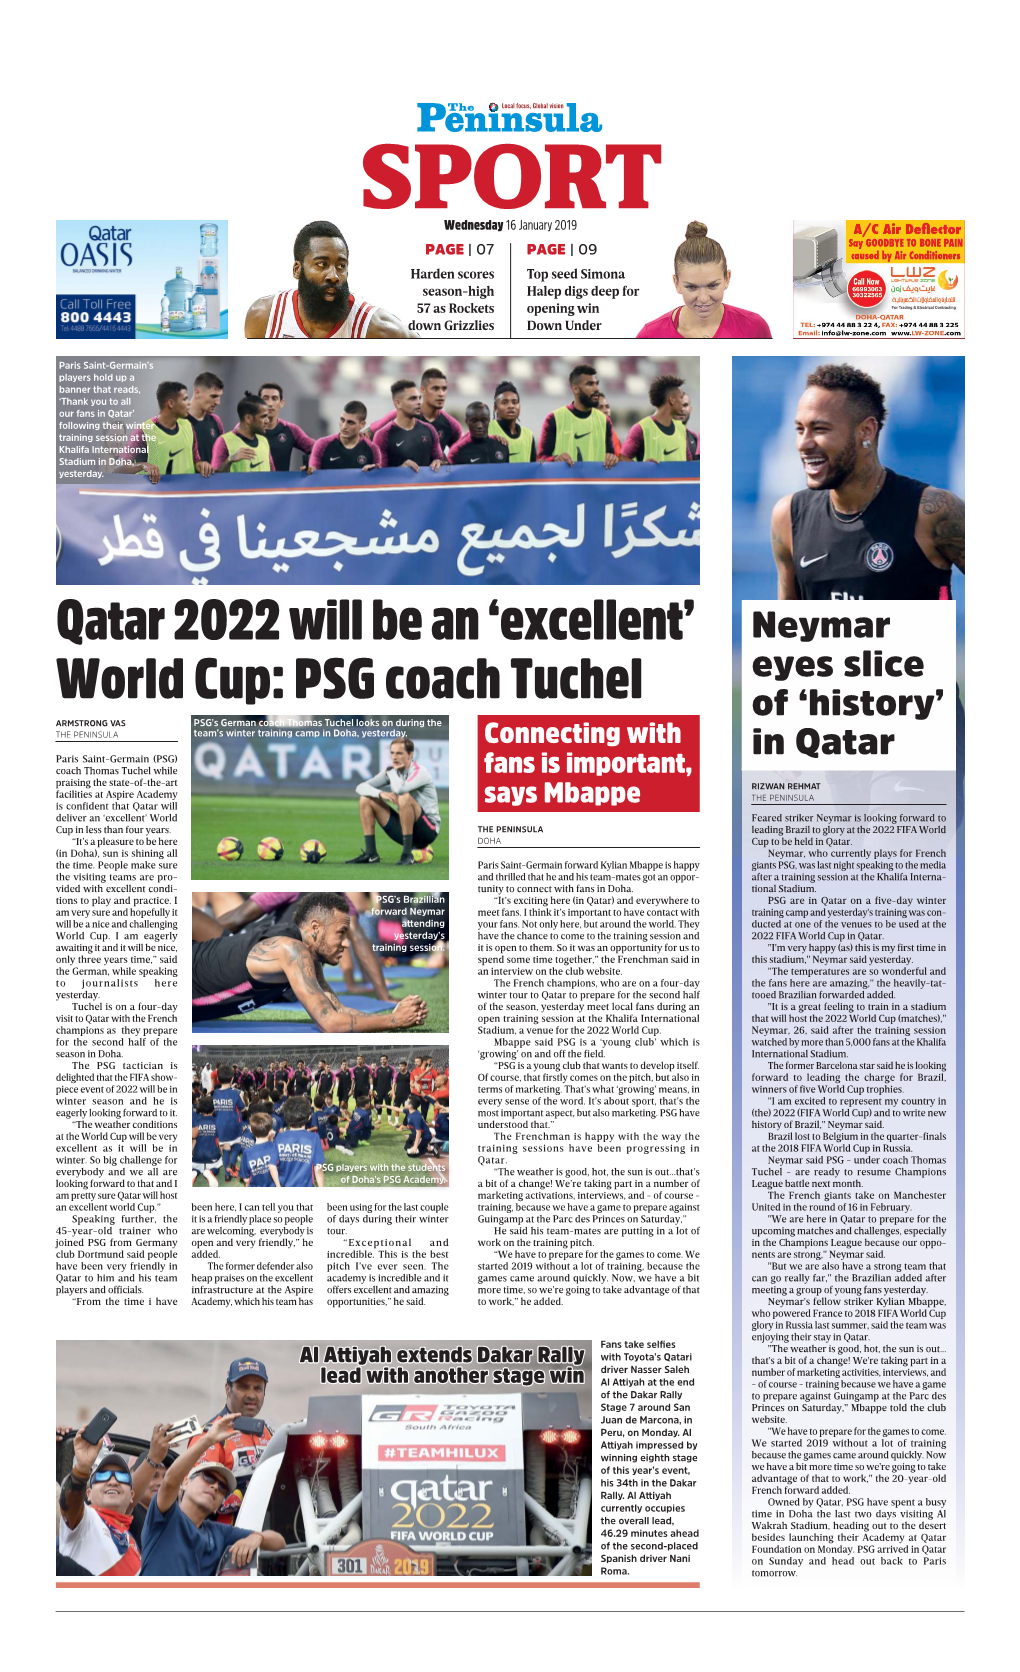 'Excellent' World Cup: PSG Coach Tuchel